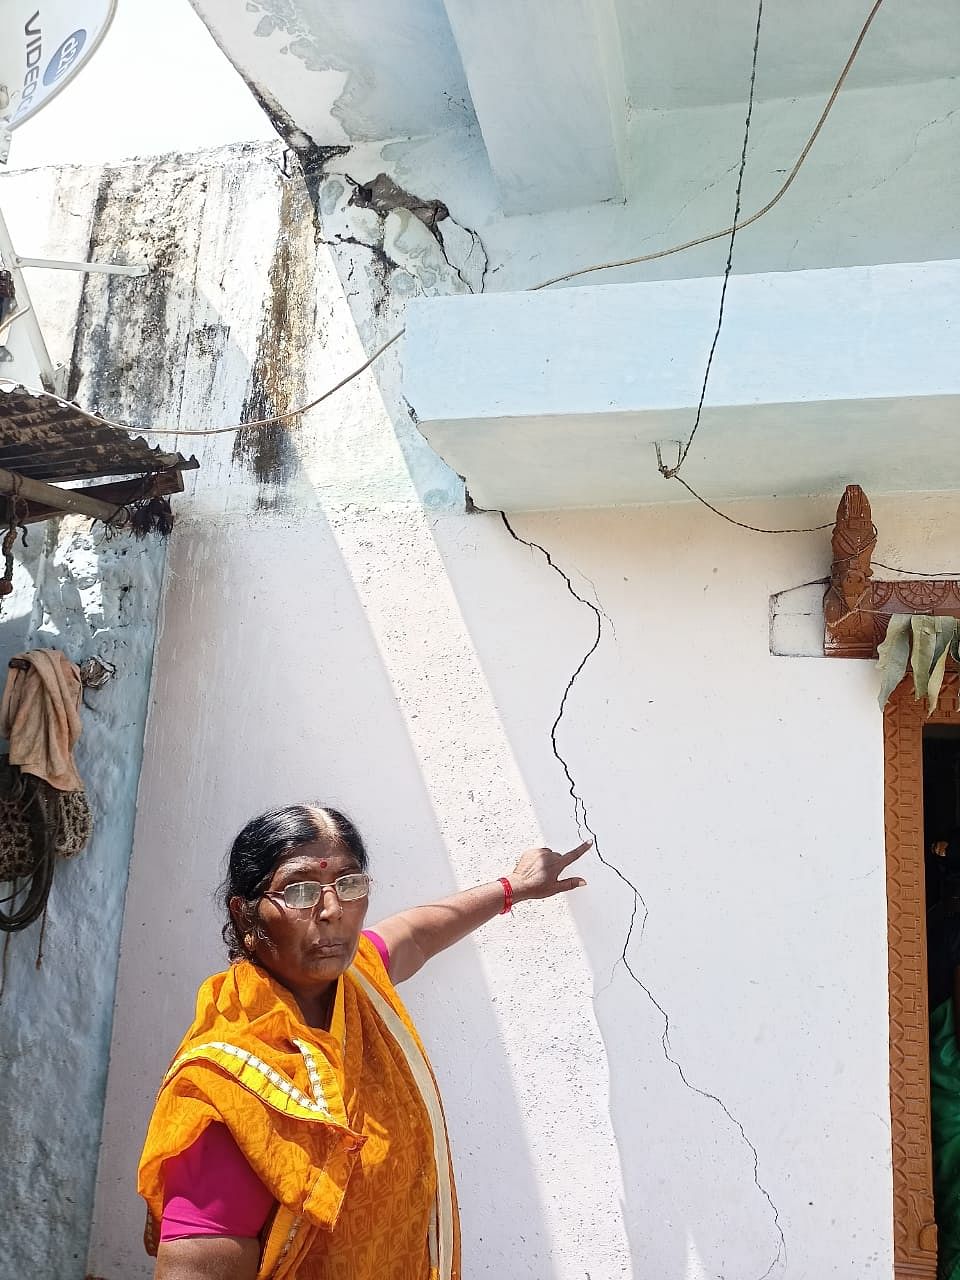 ಕಲಬುರಗಿ ಜಿಲ್ಲೆಯ ಗಡಿಕೇಶ್ವಾರದಲ್ಲಿ ಮನೆ ಬಿರುಕು ಬಿಟ್ಟಿದ್ದನ್ನು ತೋರಿಸಿದ ಮಹಿಳೆ